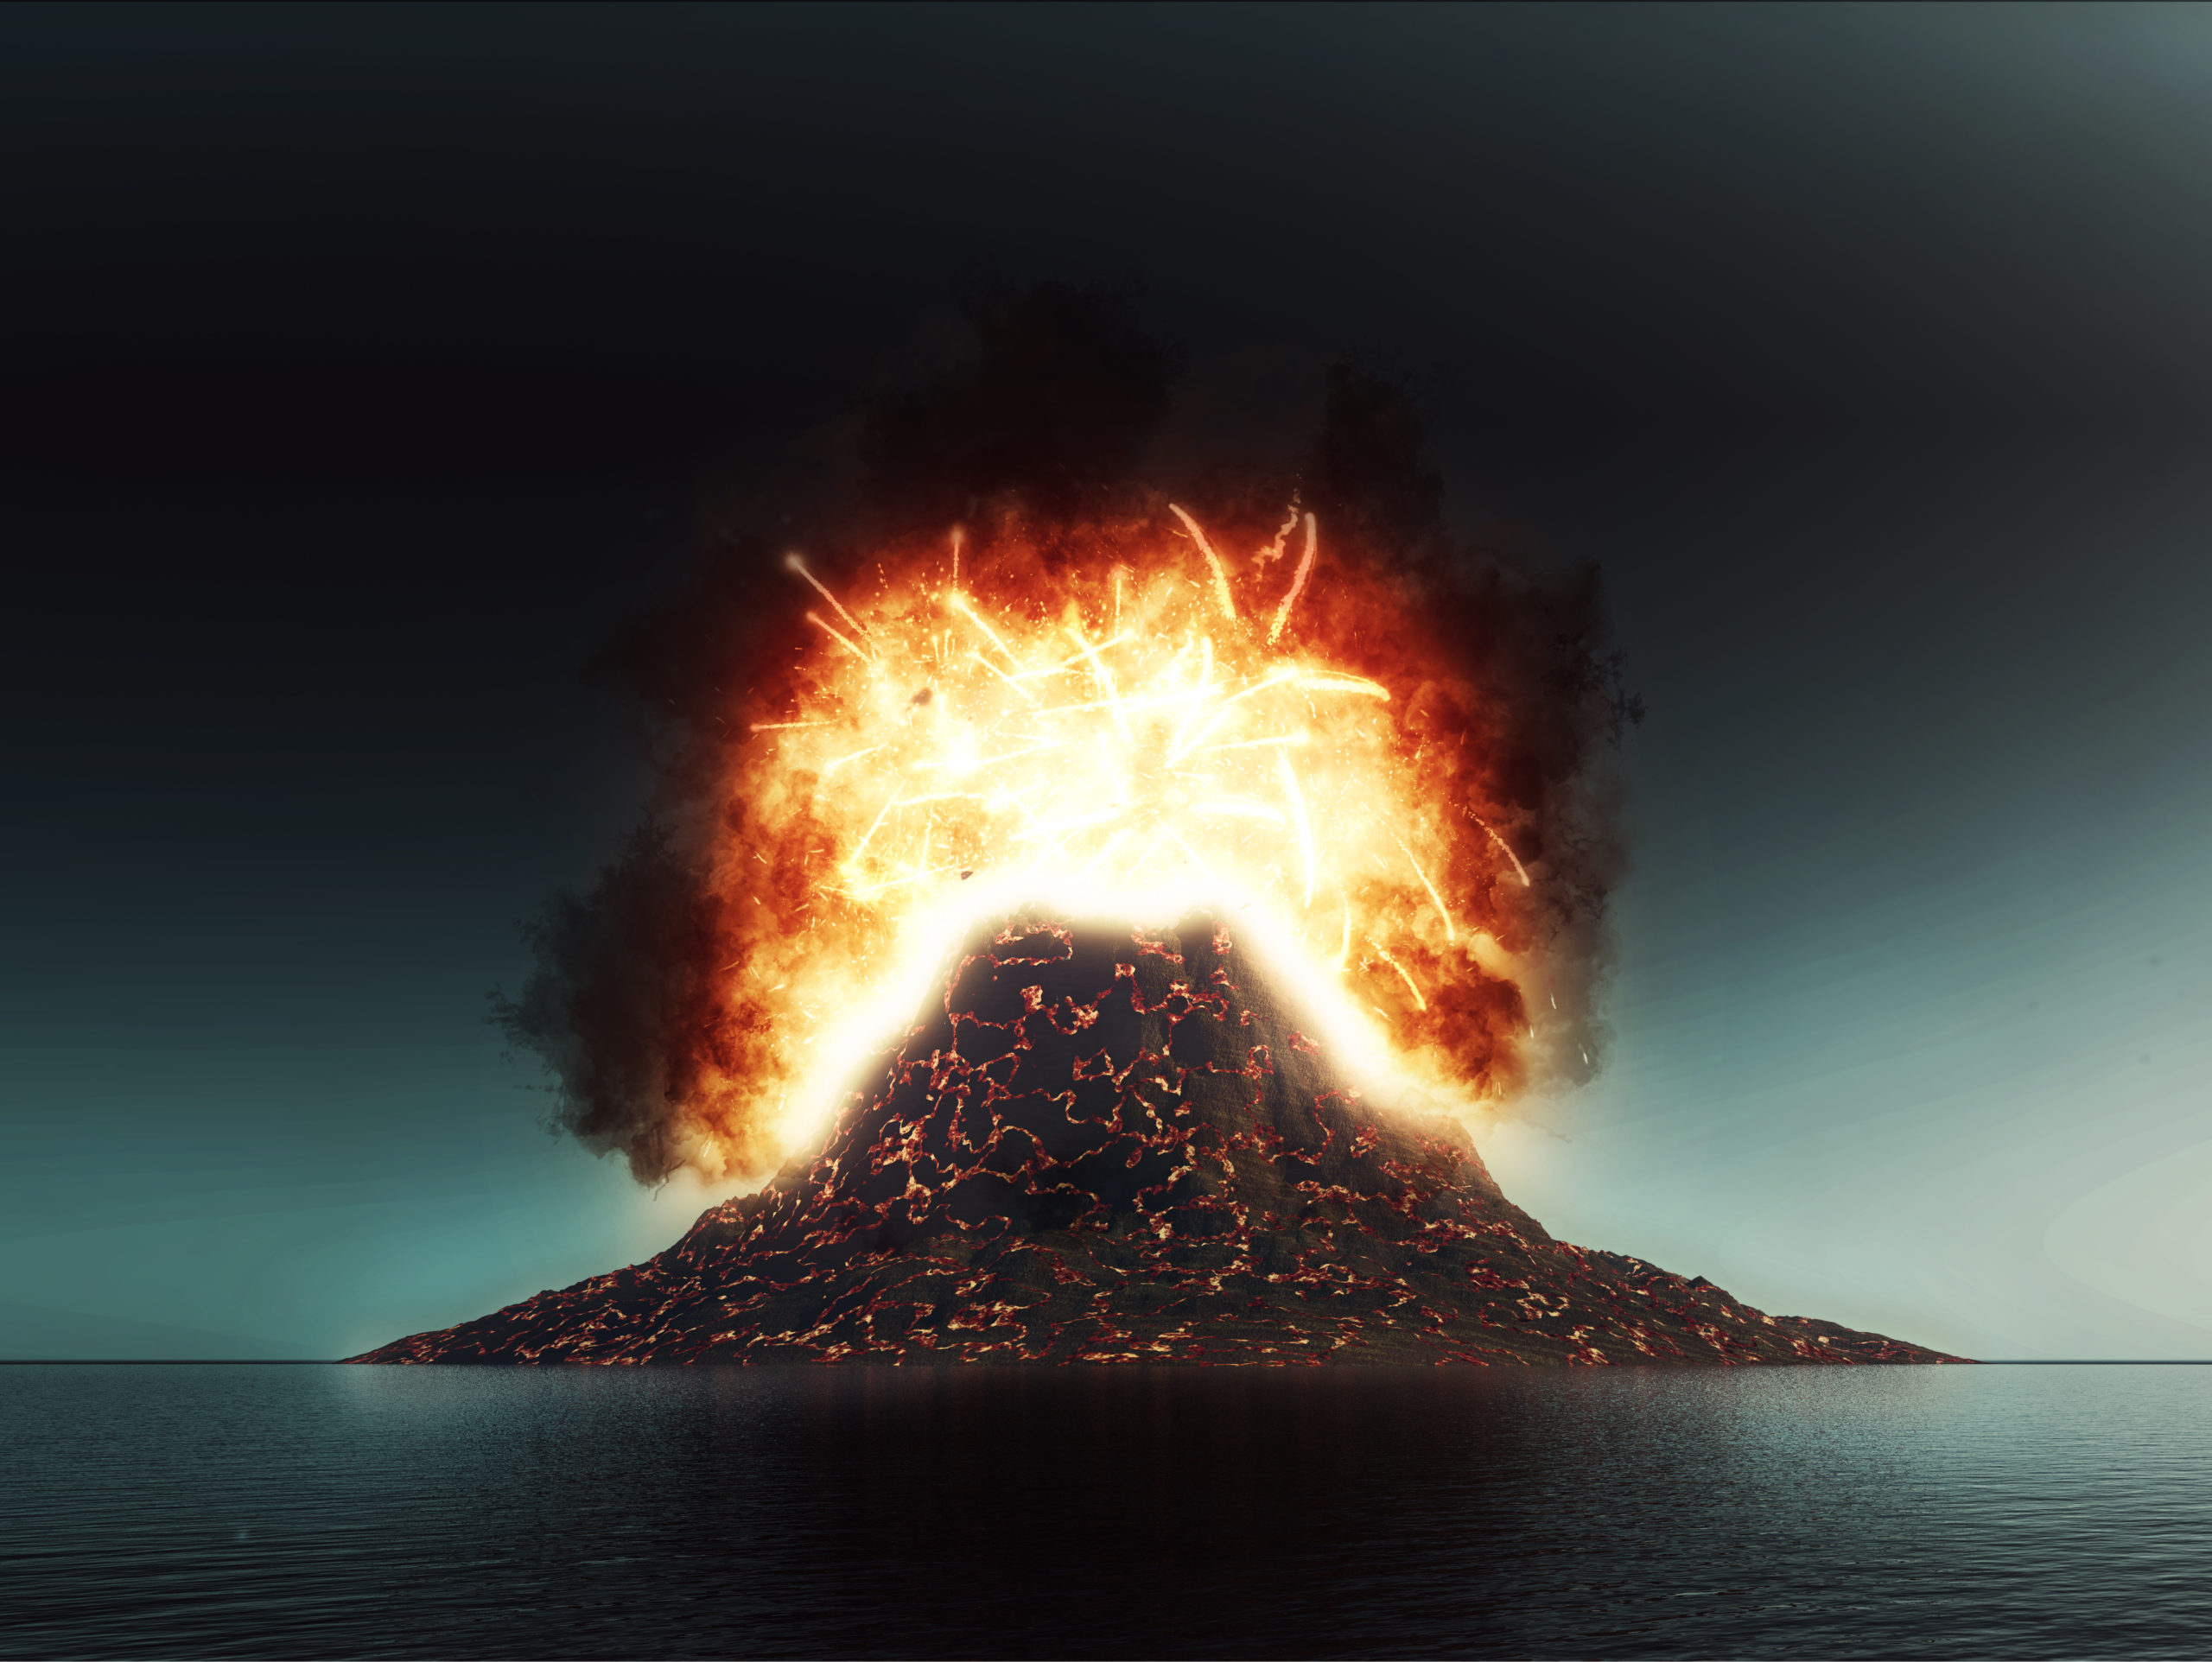 Η αρχαία ηφαιστειακή έκρηξη που συγκλόνισε τον κόσμο με έκρηξη ρεκόρ – Πώς μπορεί να γίνει πρόβλεψη μελλοντικών εκρήξεων